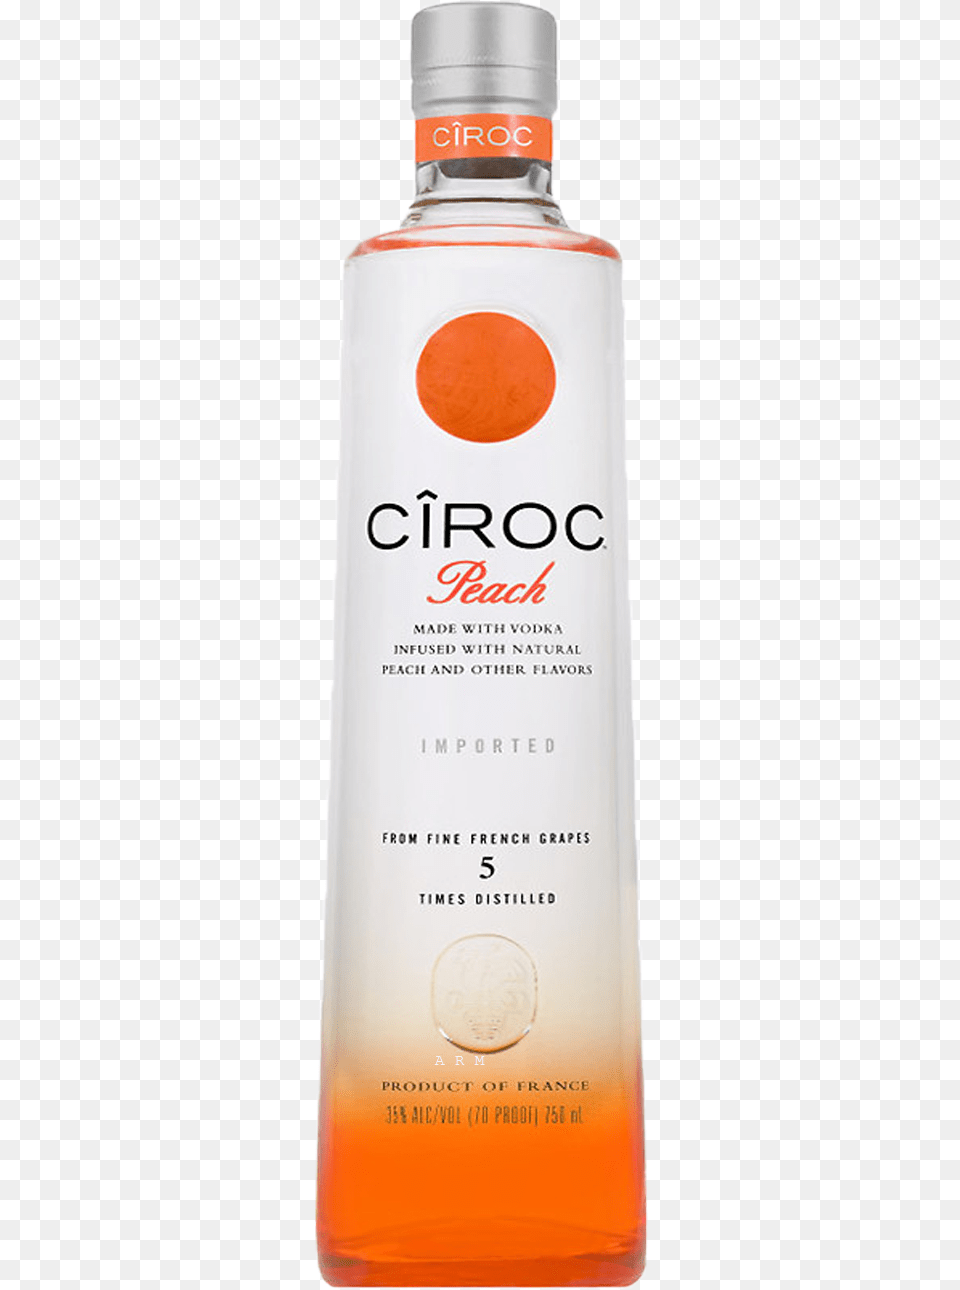 Peach Ciroc Sizes, Beverage, Alcohol, Liquor, Bottle Free Transparent Png